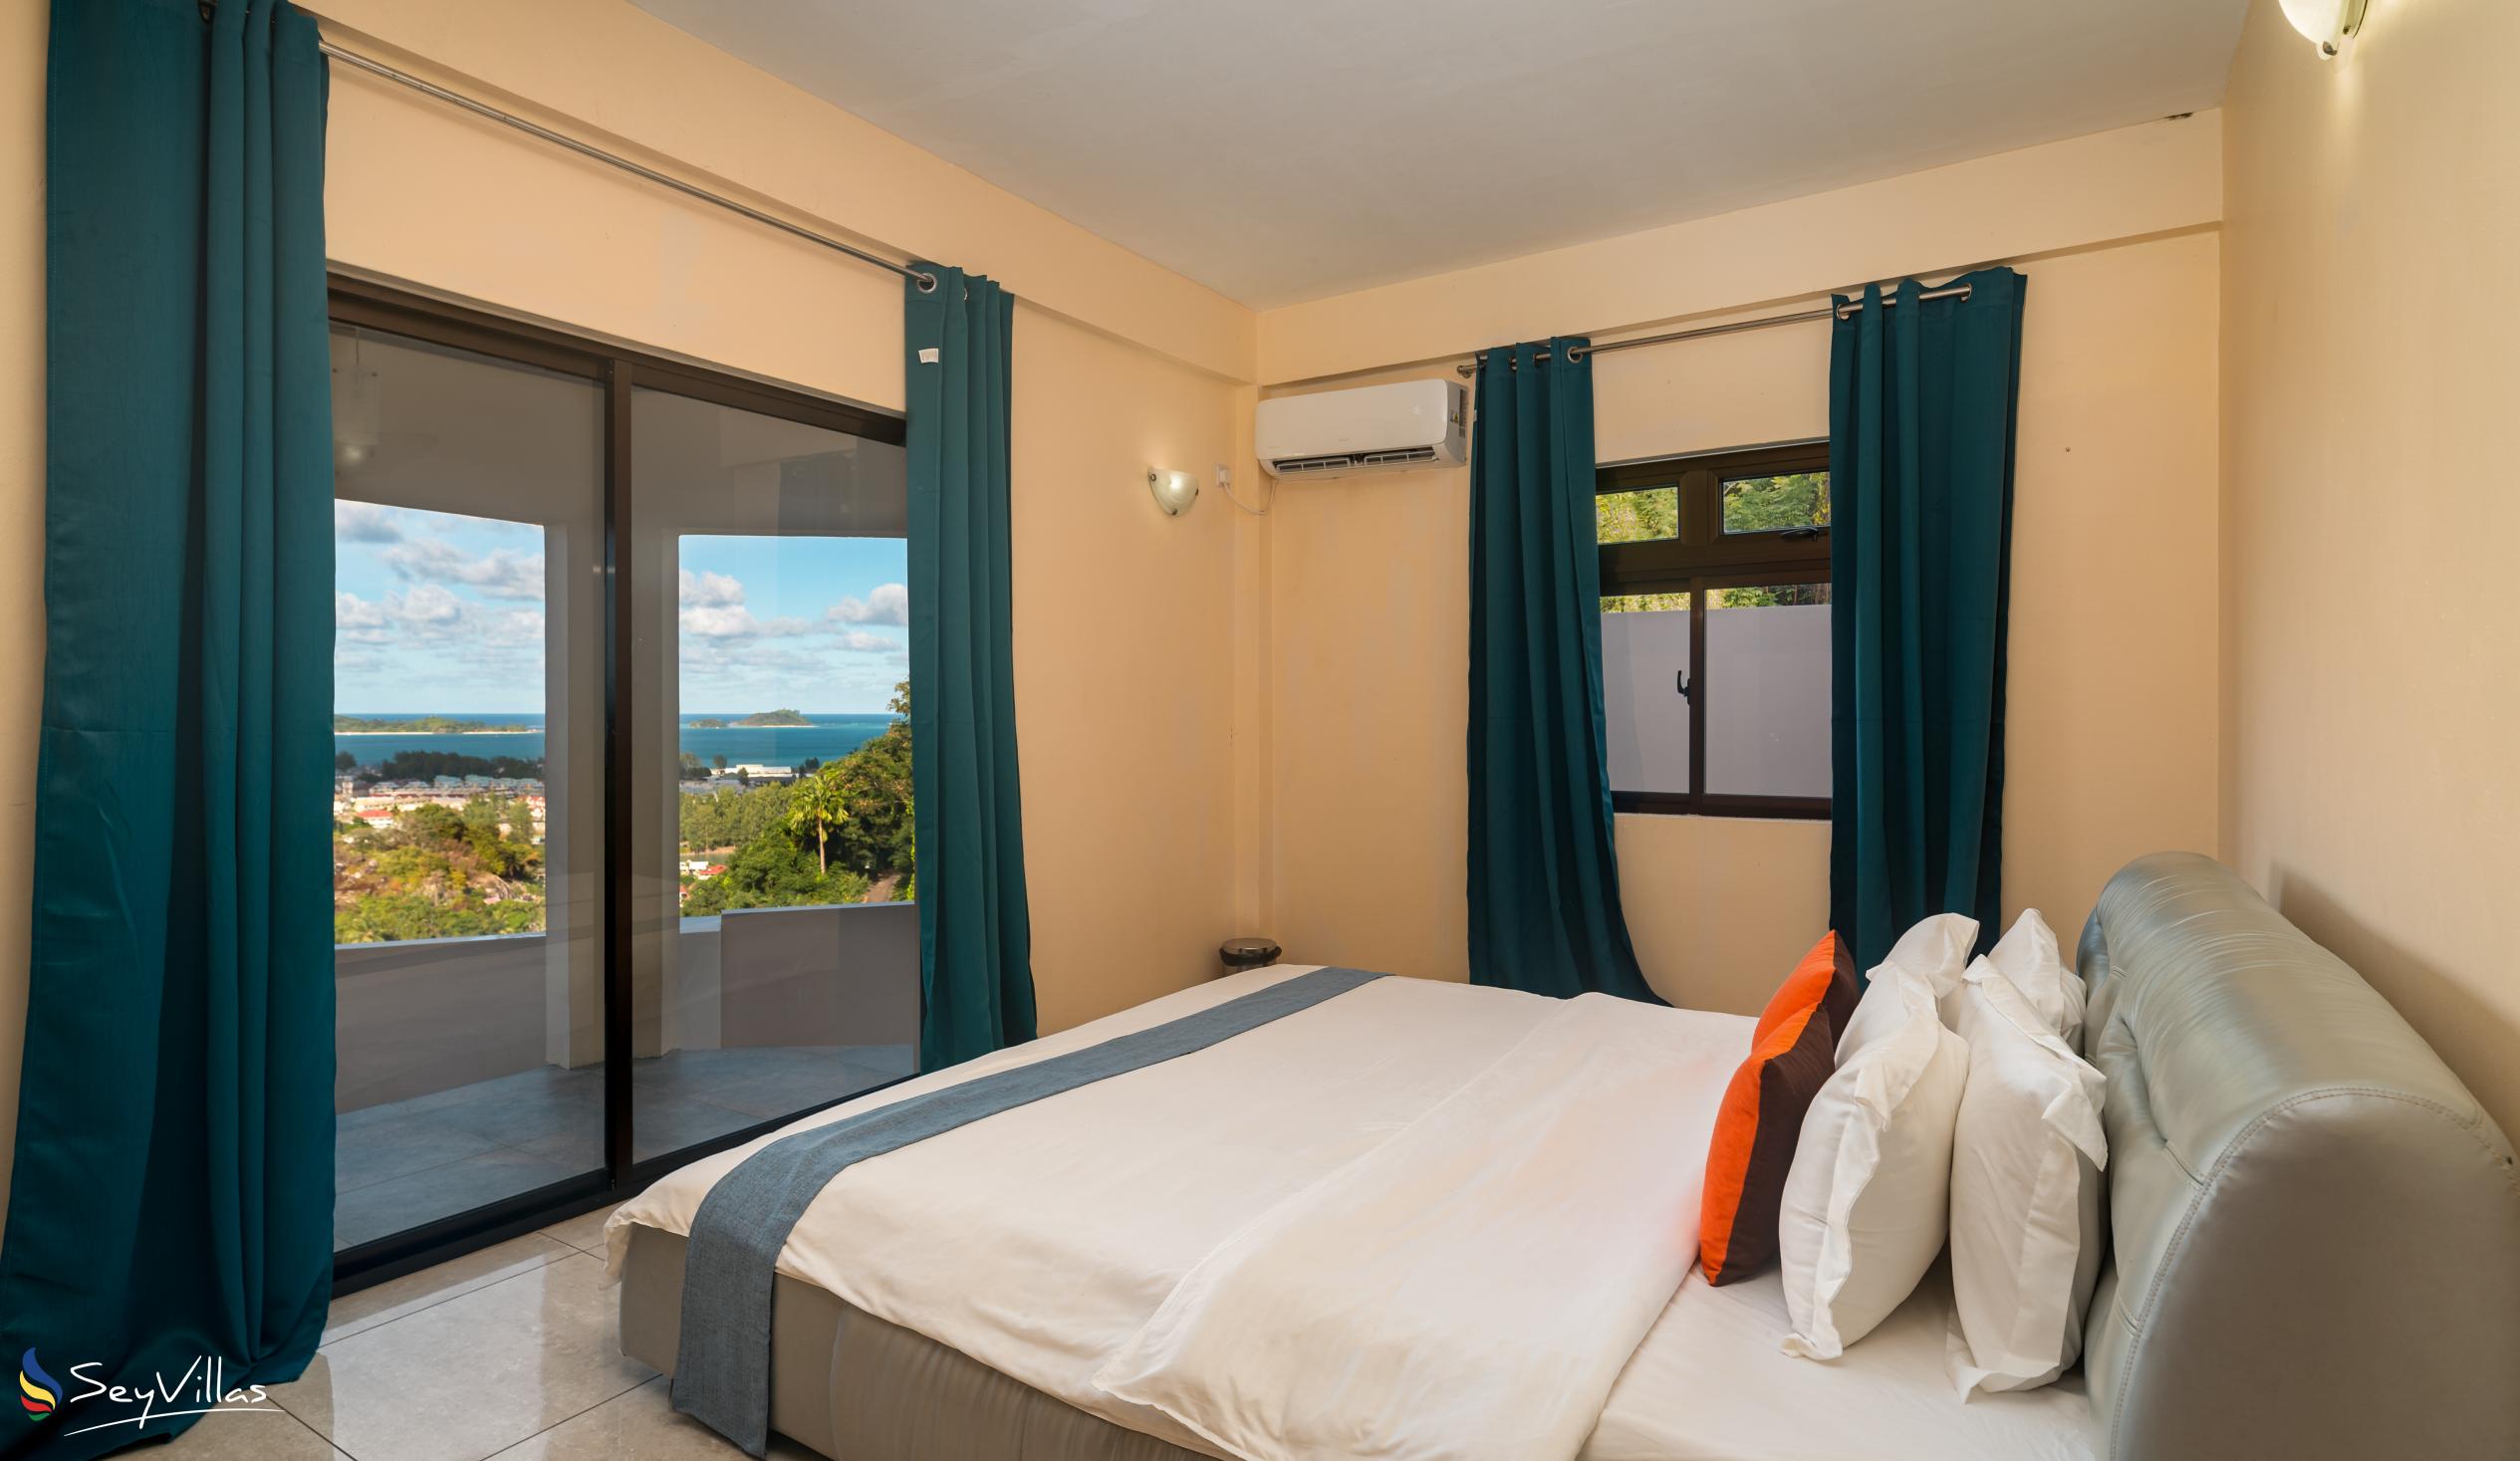 Foto 70: Maison L'Horizon - Appartement 2 chambres Vann Nor - Mahé (Seychelles)